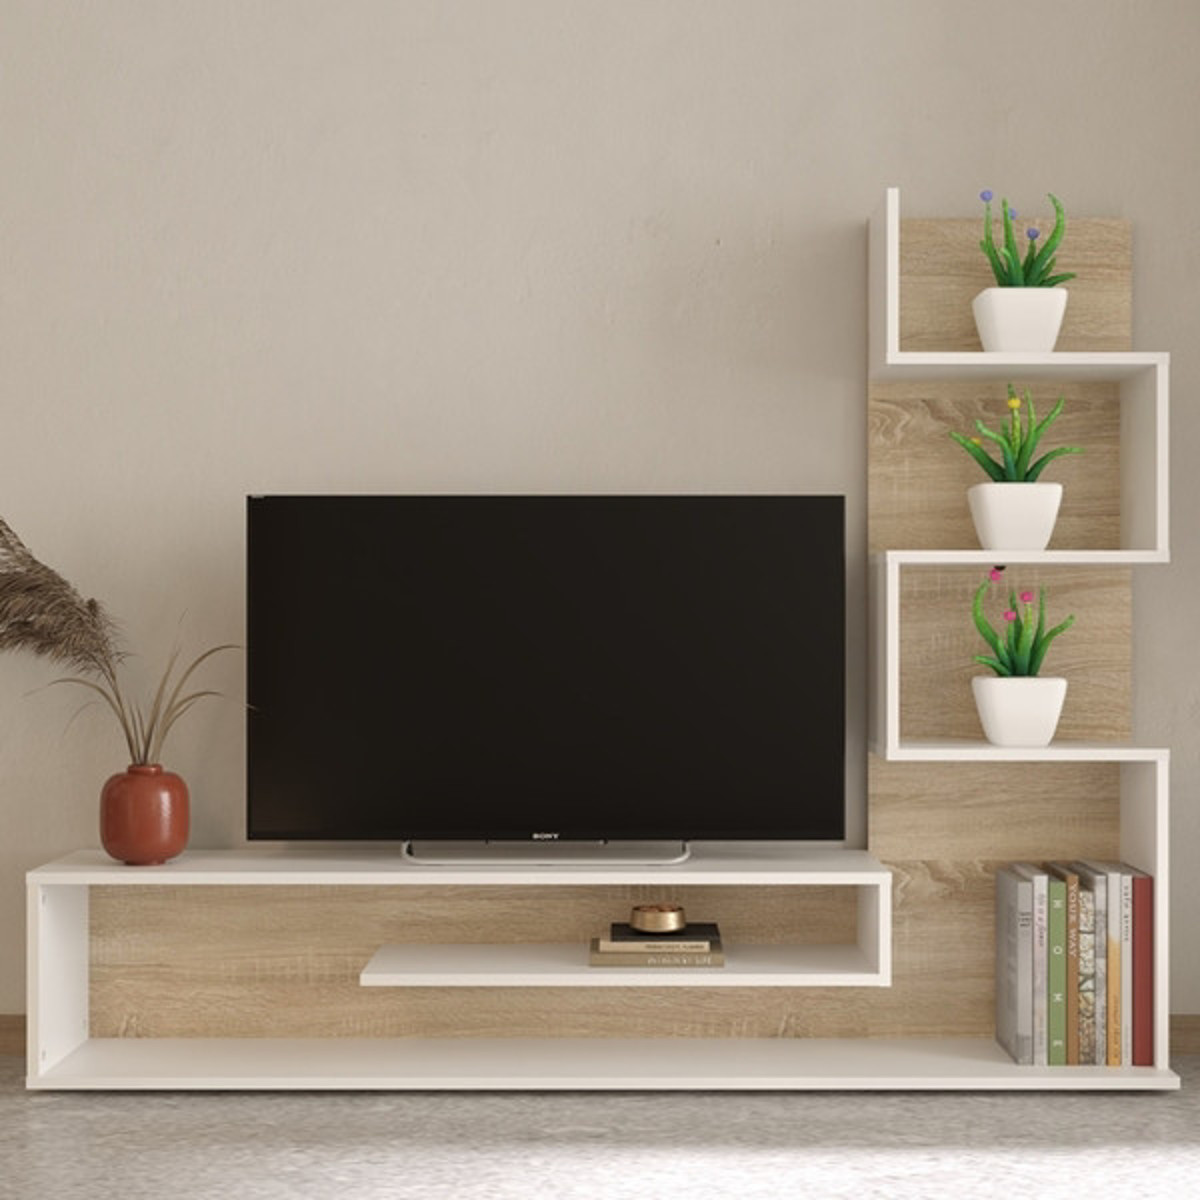 Imagen de Mueble para Televisión fabricado en melamina y con estantes